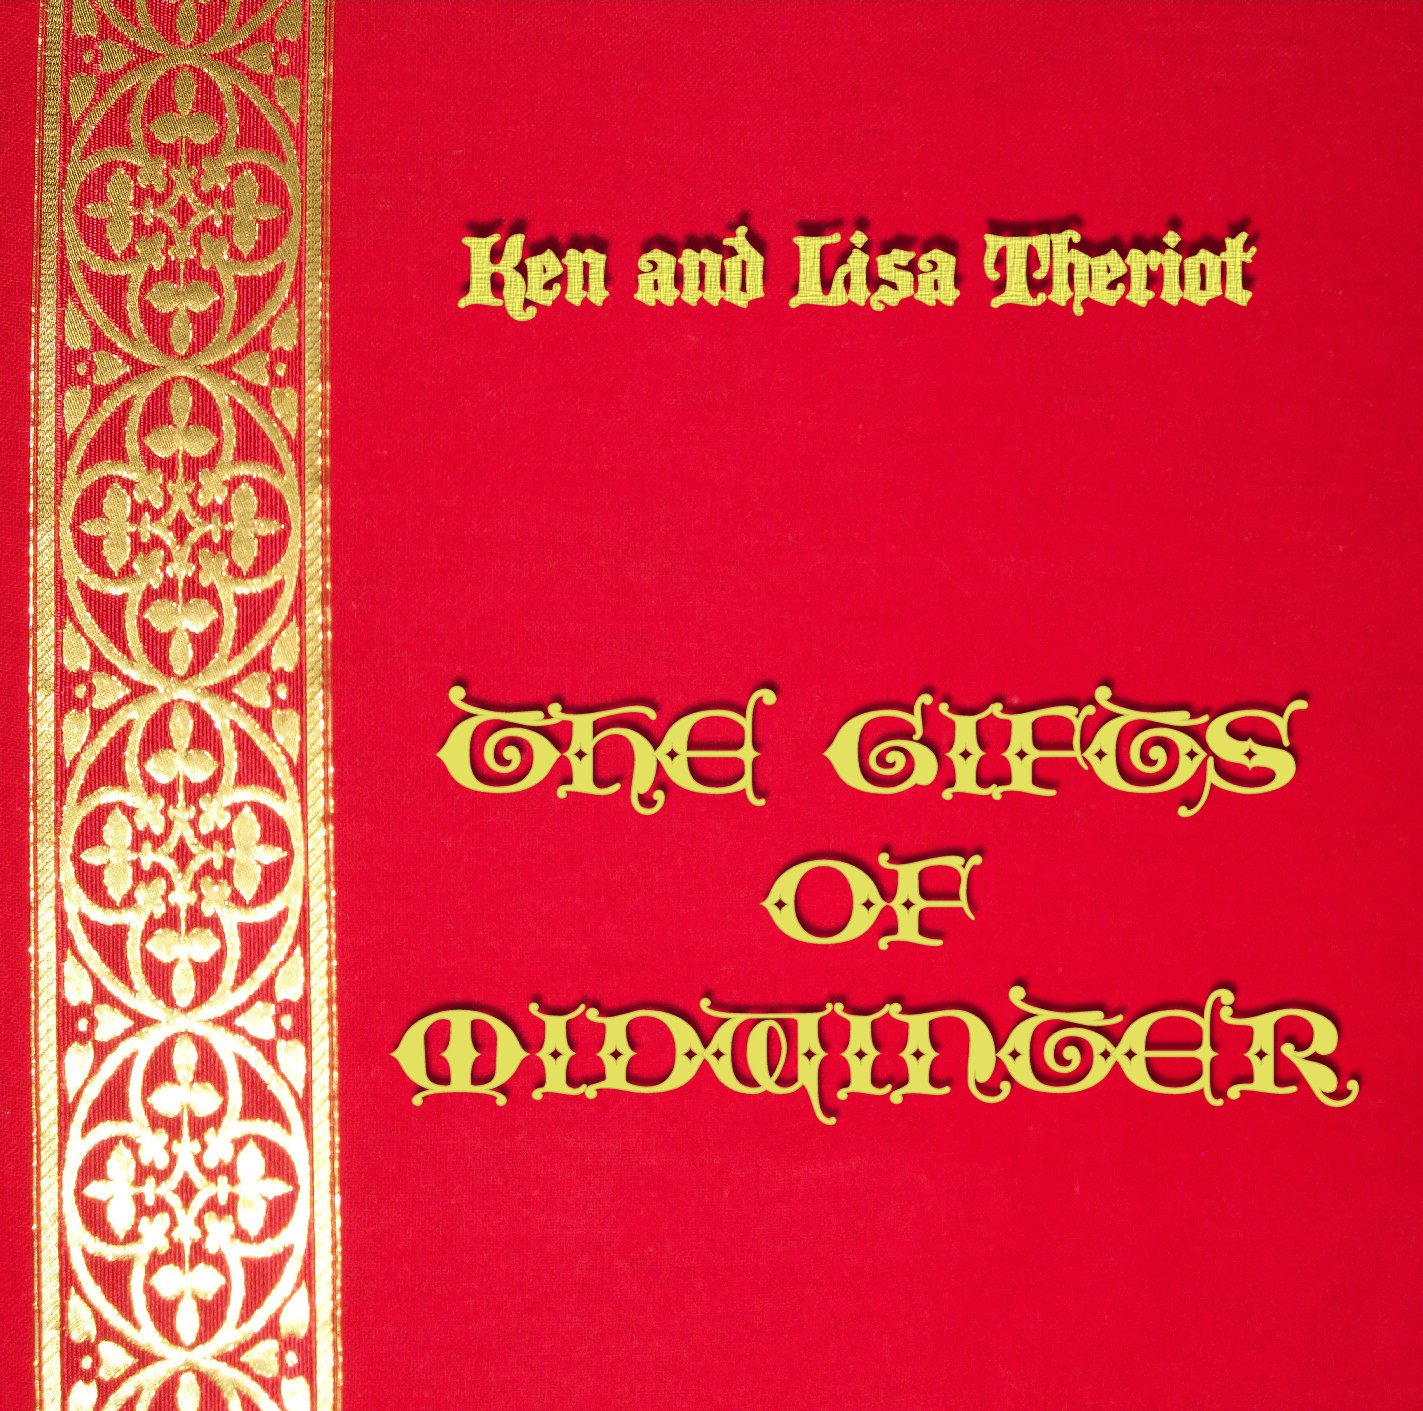 Ken and Lisa Theriot Christmas Album